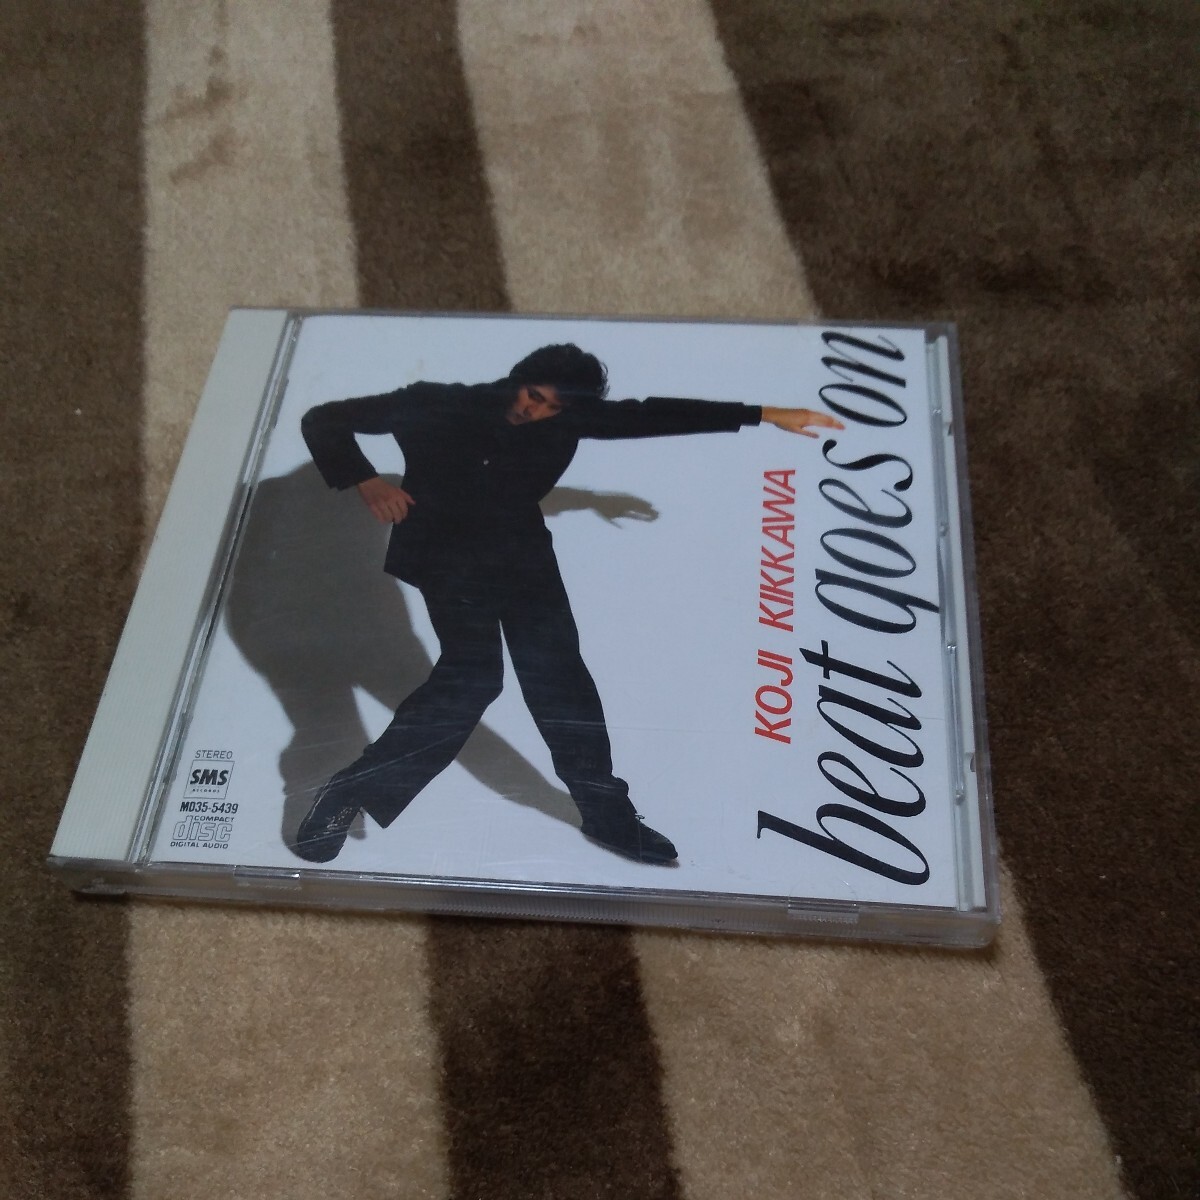 CD 吉川晃司 ベスト・アルバム BEAT GOES ON モニカ サヨナラは八月のララバイ ラ・ヴィアンローズ にくまれそうなNEWフェイス MD35-5439の画像1